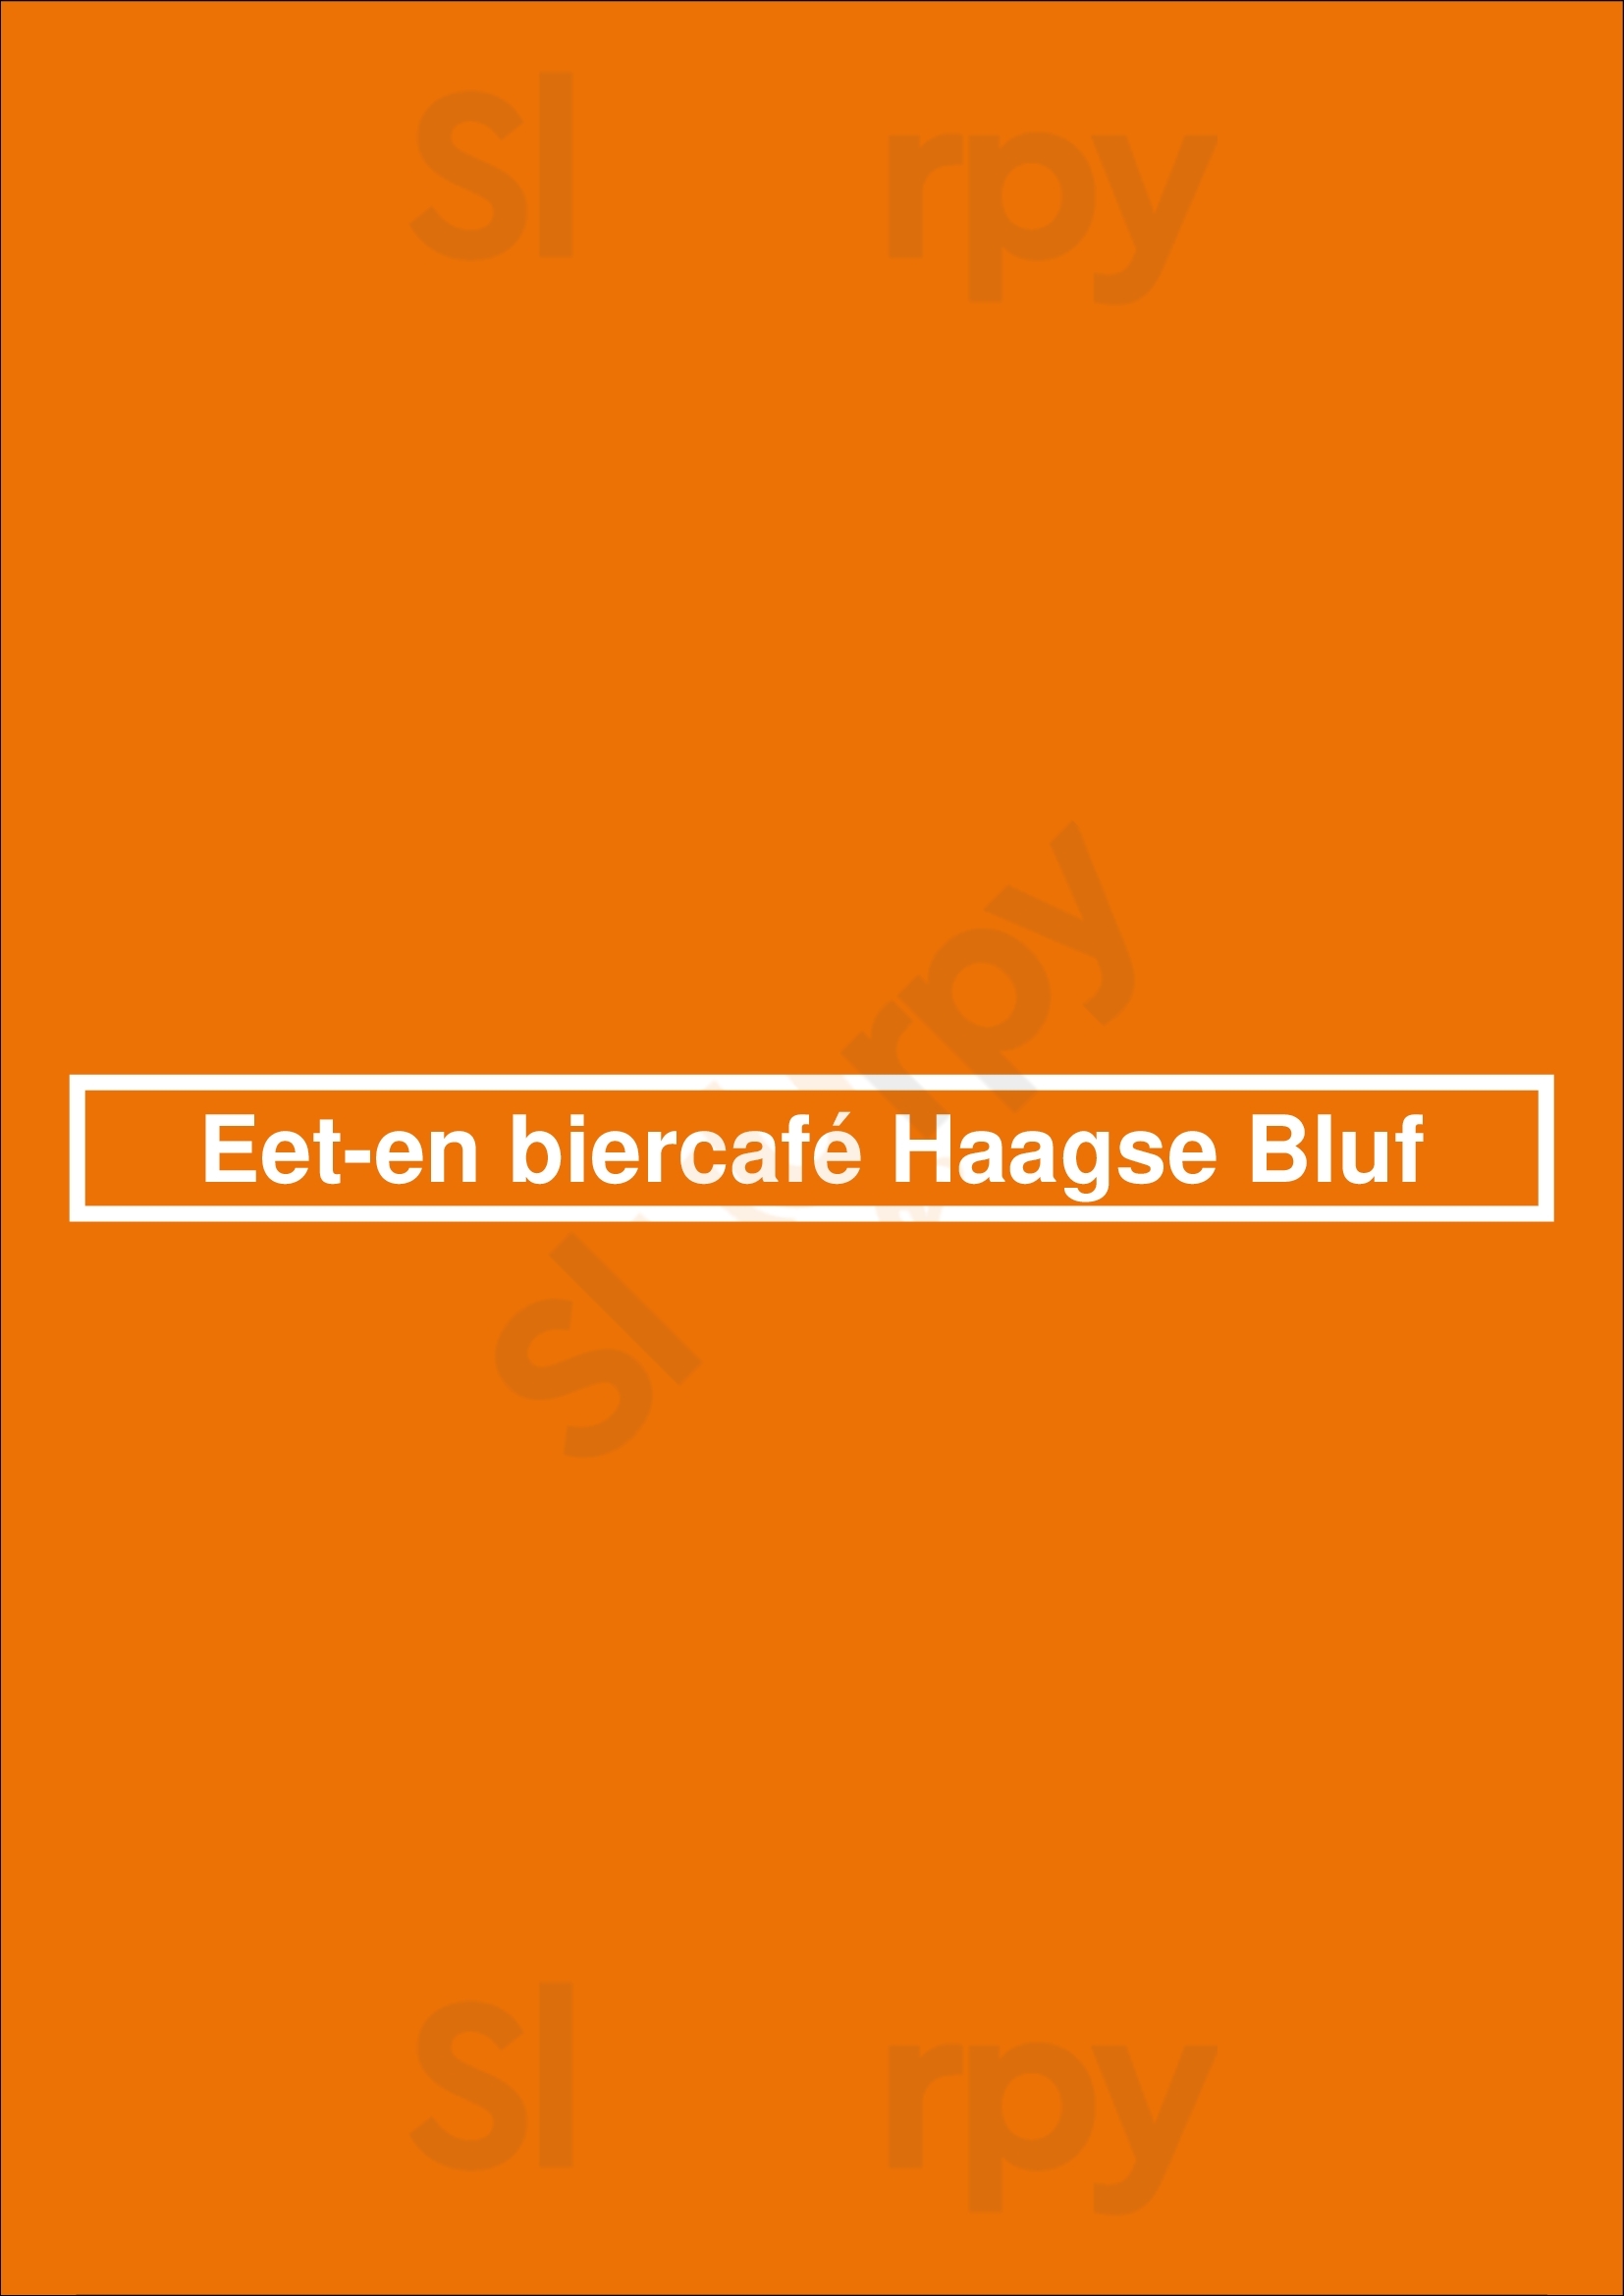 Eet-en Biercafé Haagse Bluf Rotterdam Menu - 1